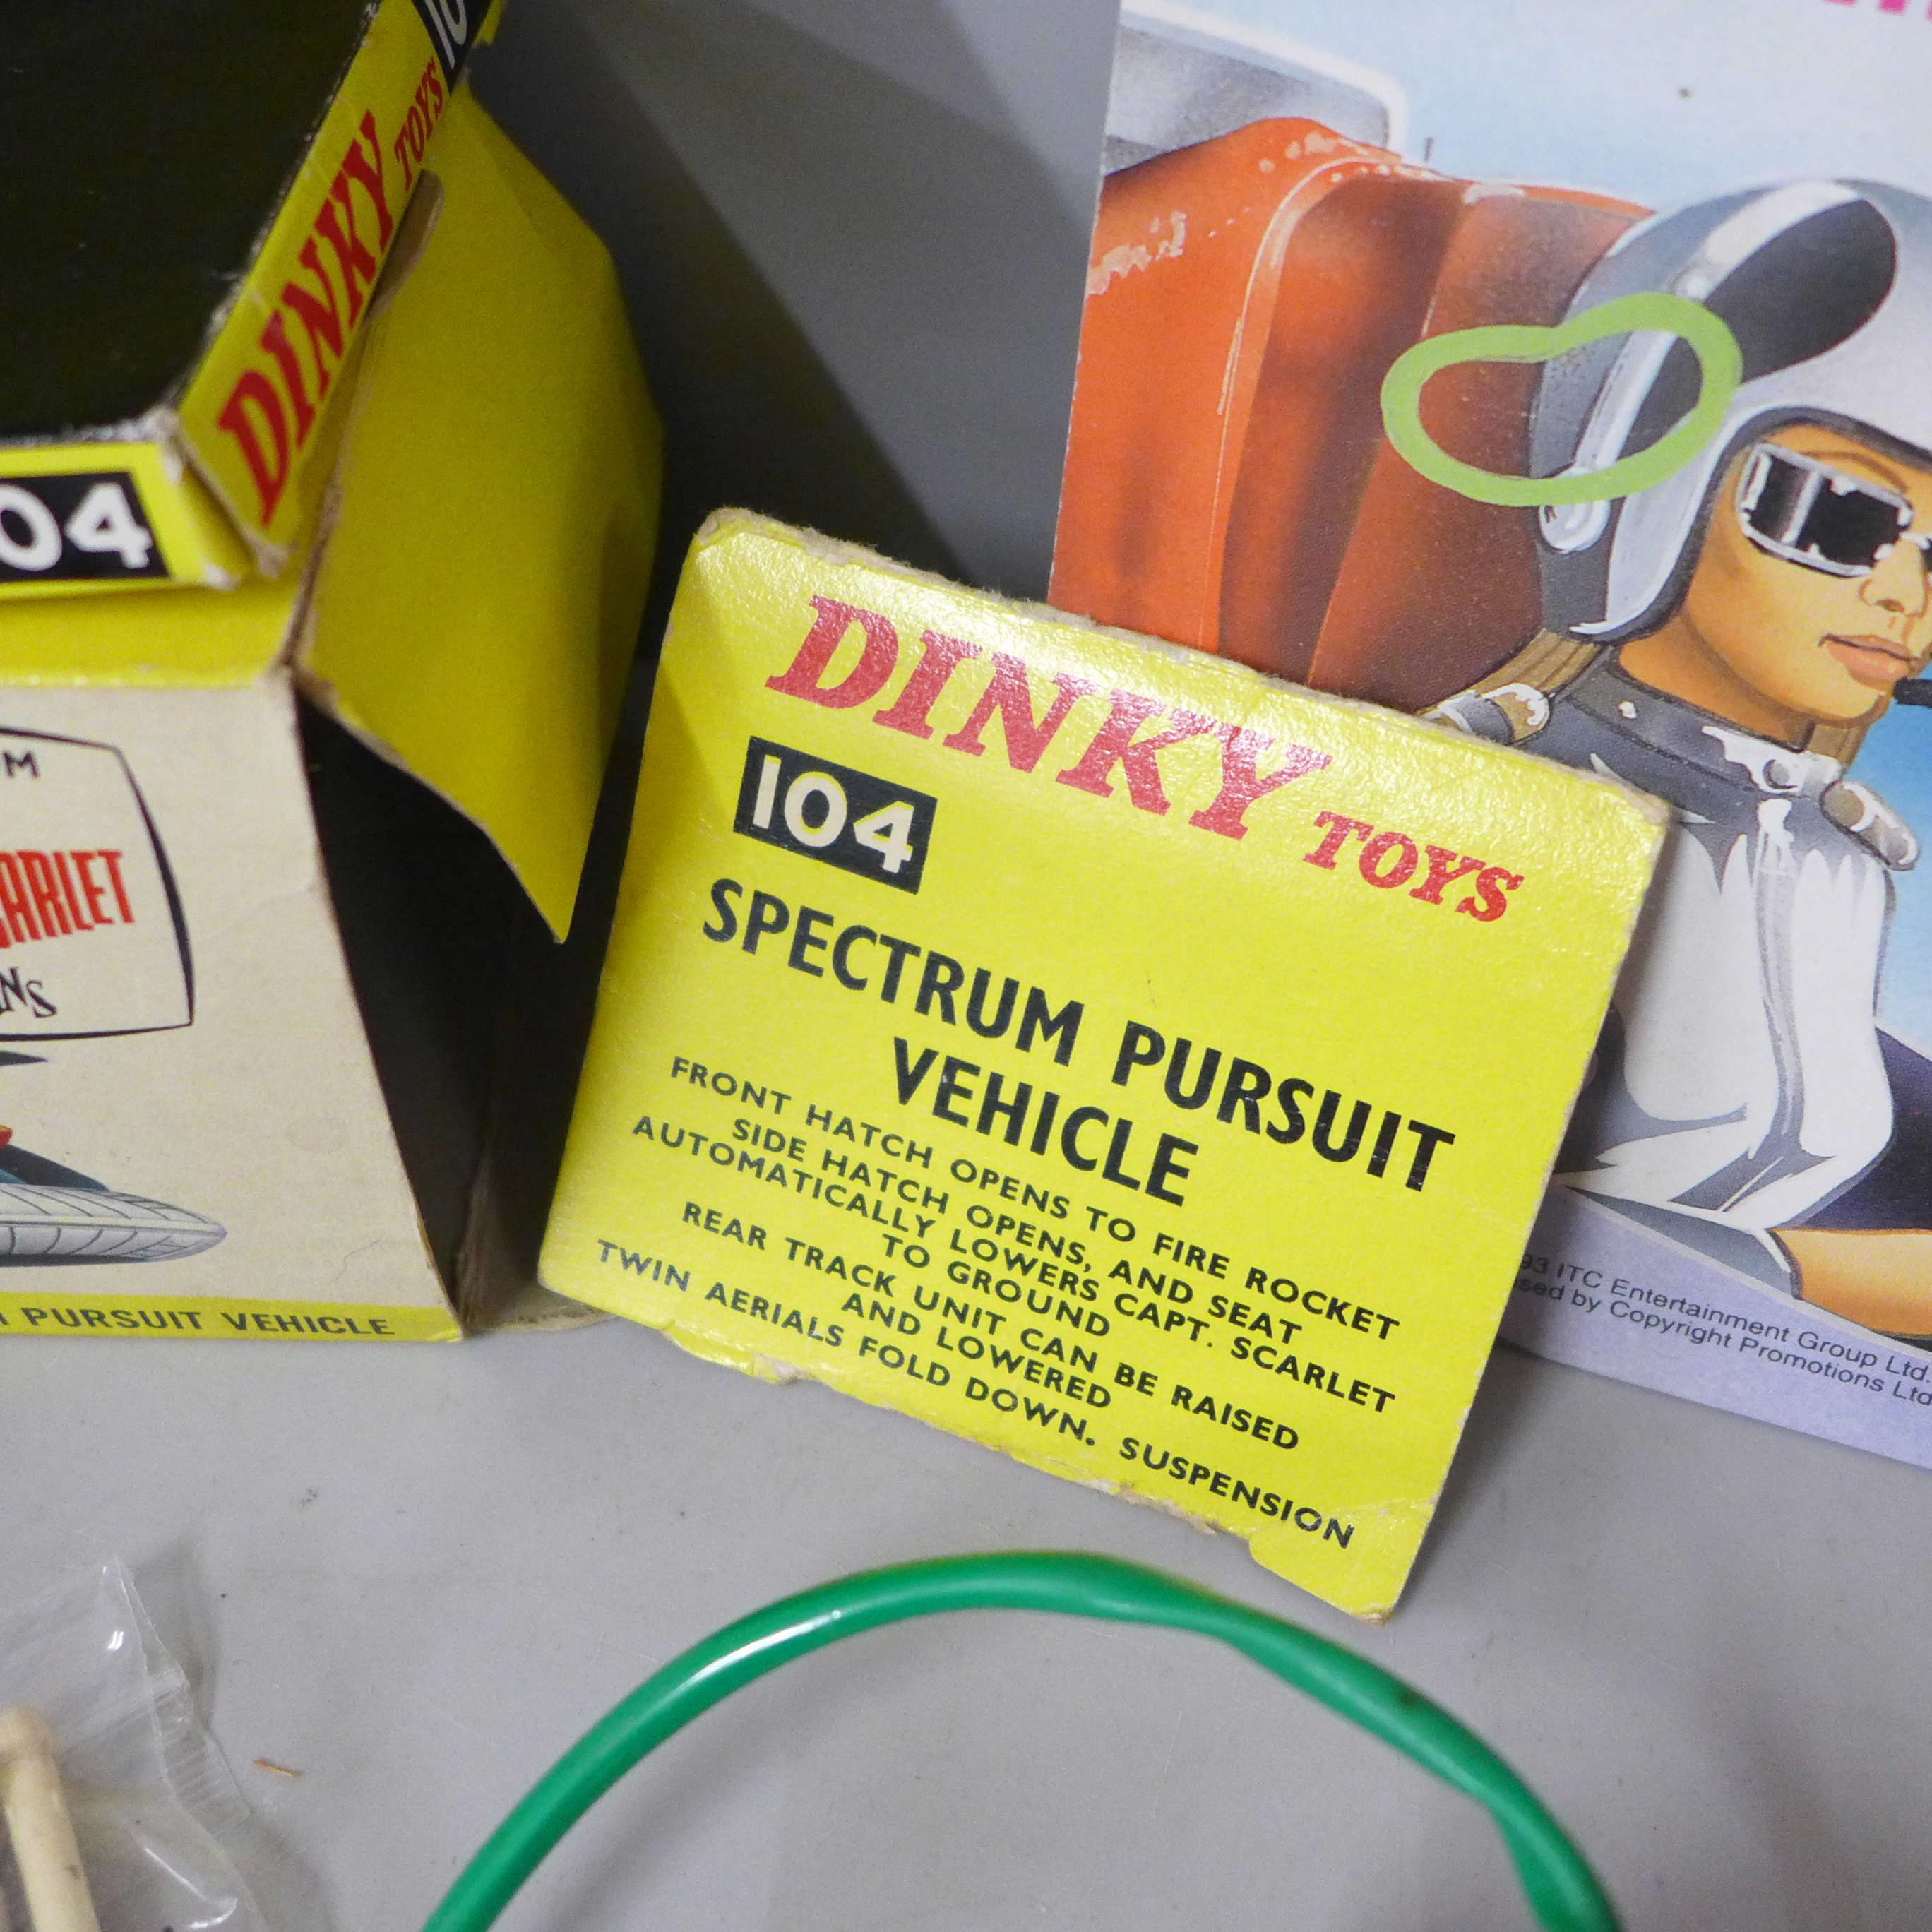 A die-cast Schuco Racer 1036/1, Dinky Toys Captain Scarlet Spectrum Pursuit Vehicle, box a/f, - Image 6 of 7